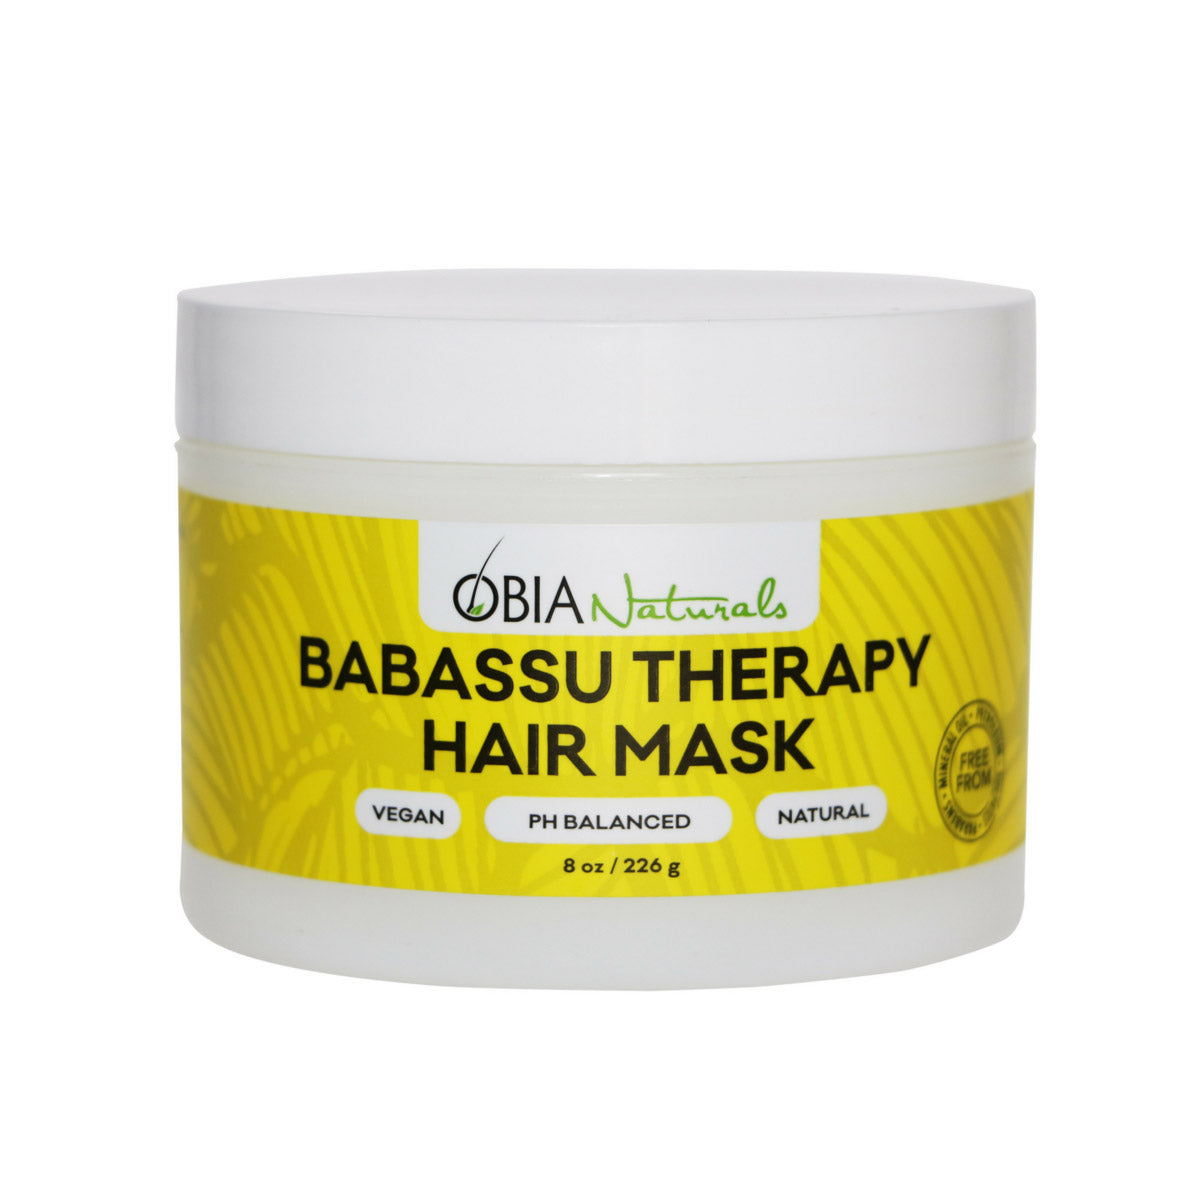 Hautement concentré en actifs hydratants et réparateurs, Babassu Therapy est un masque-crème onctueux qui agit en profondeur pour réparer la fibre capillaire.